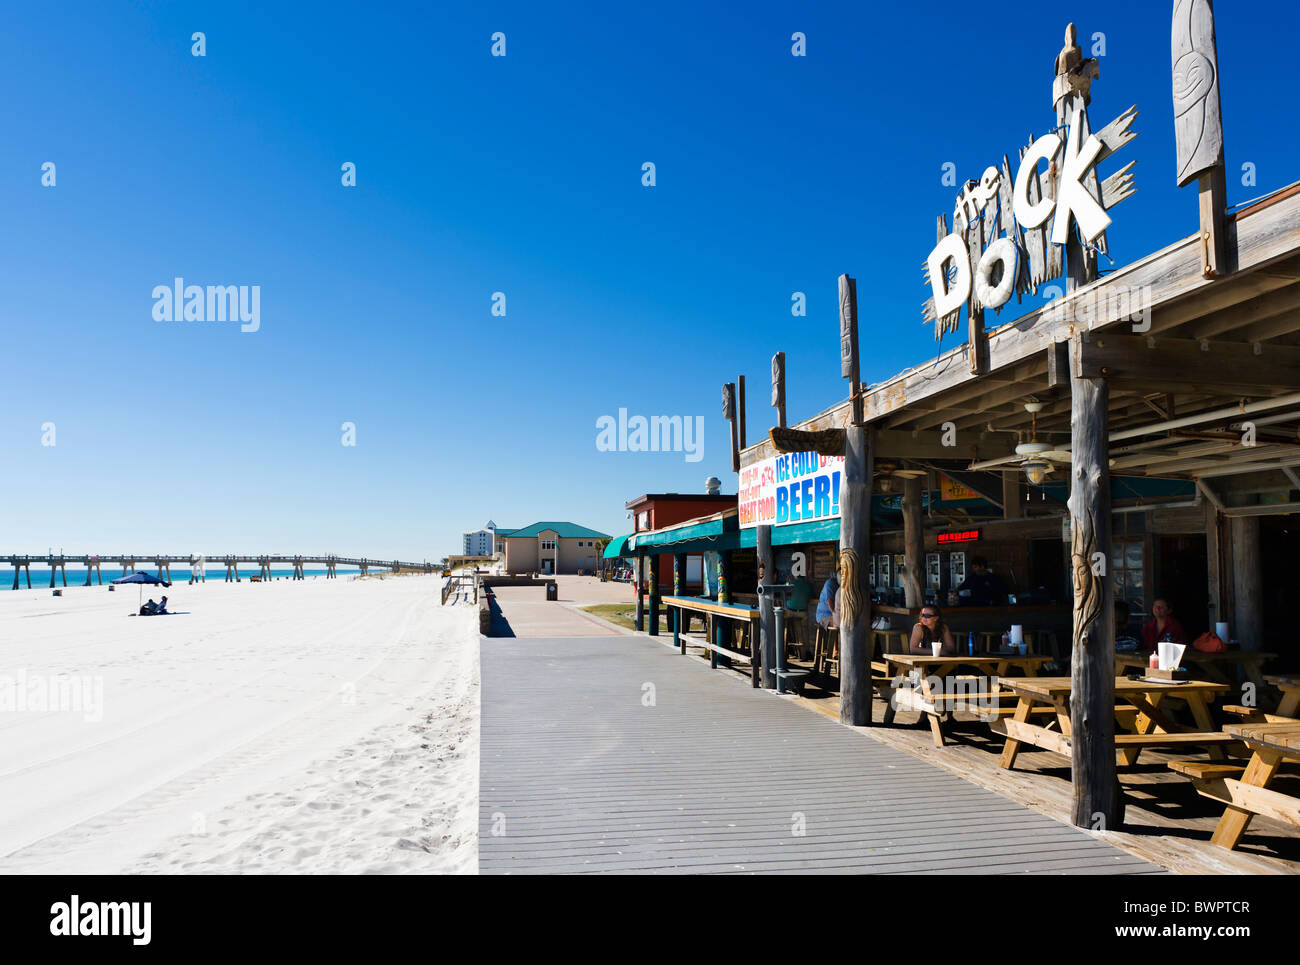 Il Dock bar sulla spiaggia vicino al molo e il centro resort, la spiaggia di Pensacola, Isola di Santa Rosa, costa del Golfo della Florida, Stati Uniti d'America Foto Stock